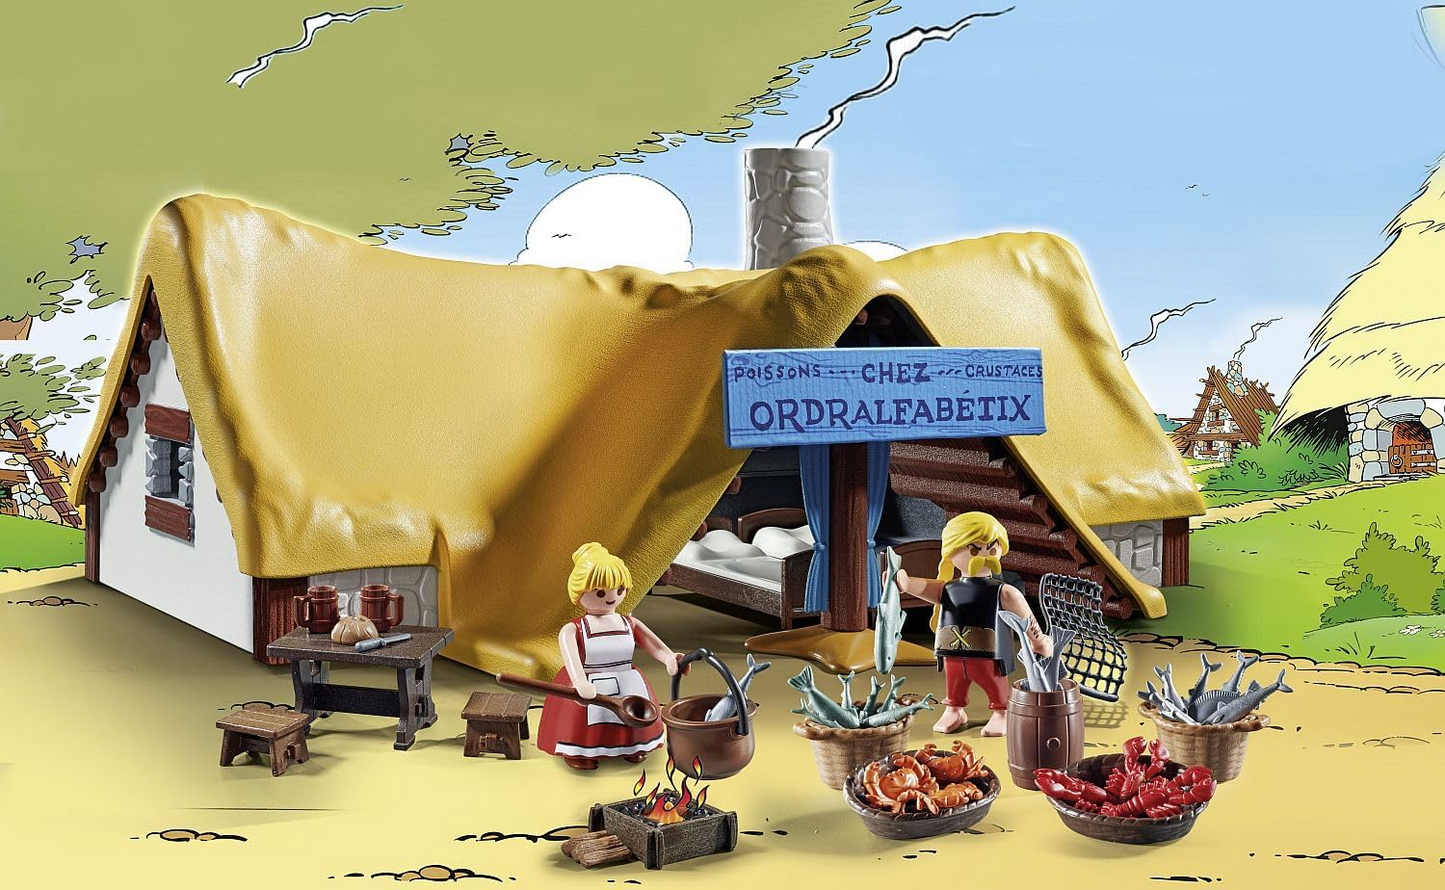 Playmobil 71266 Asterix: Cabana de Unhygienix, Unhygienix e sua esposa Bacteria